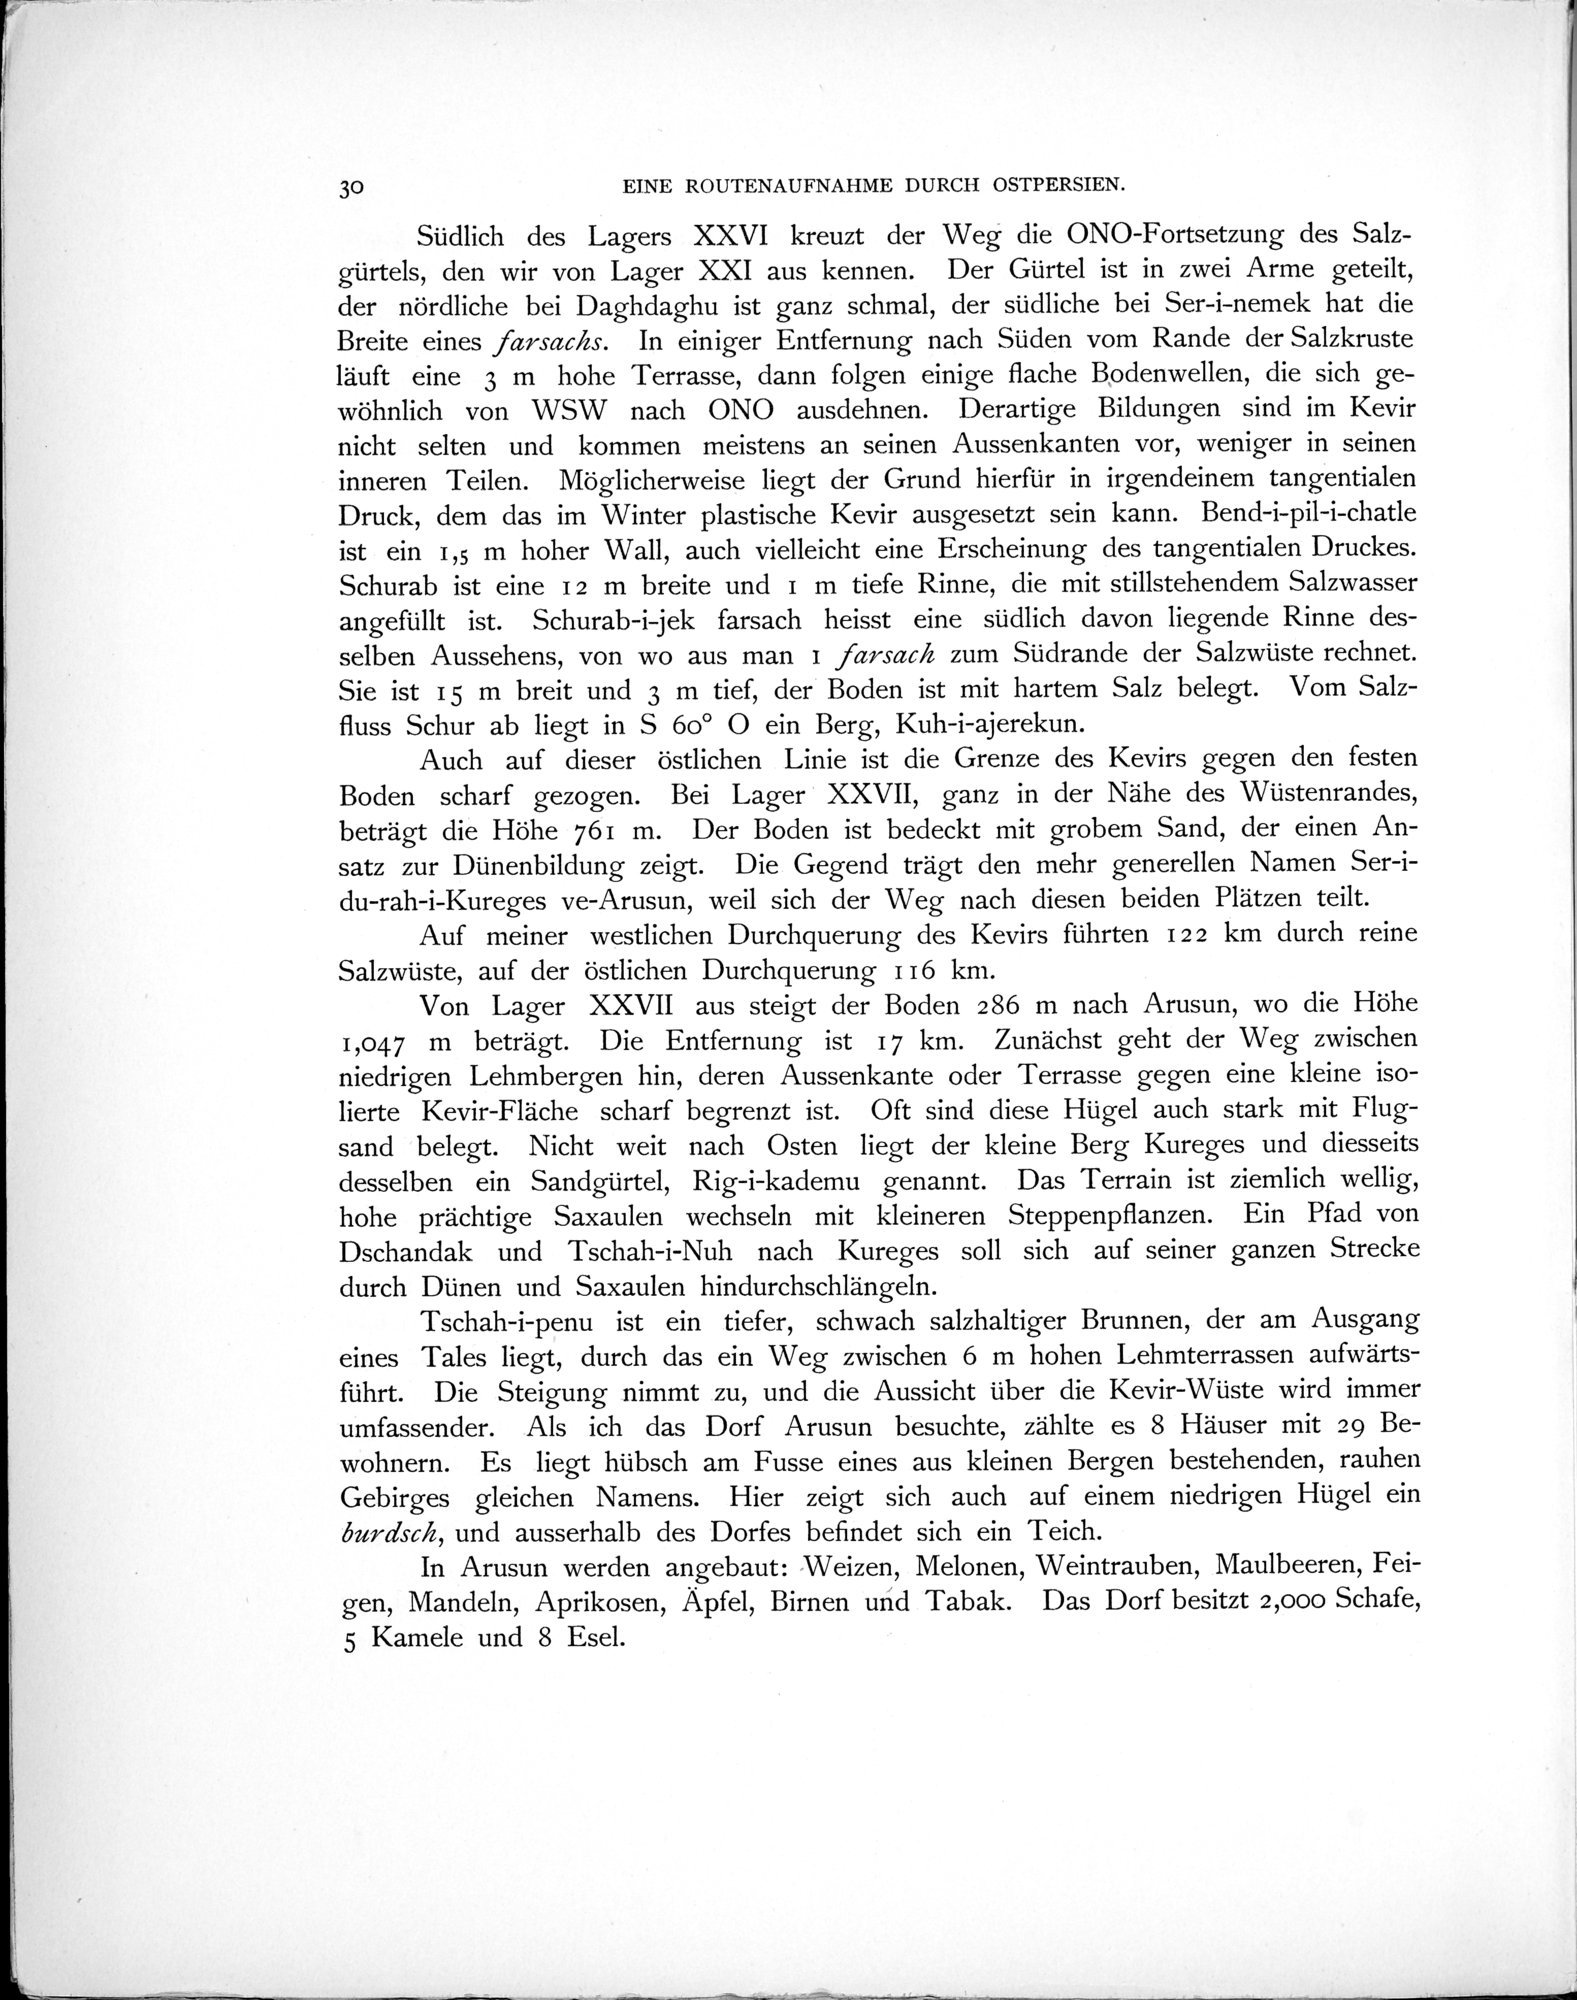 Eine Routenaufnahme durch Ostpersien : vol.1 / Page 88 (Grayscale High Resolution Image)